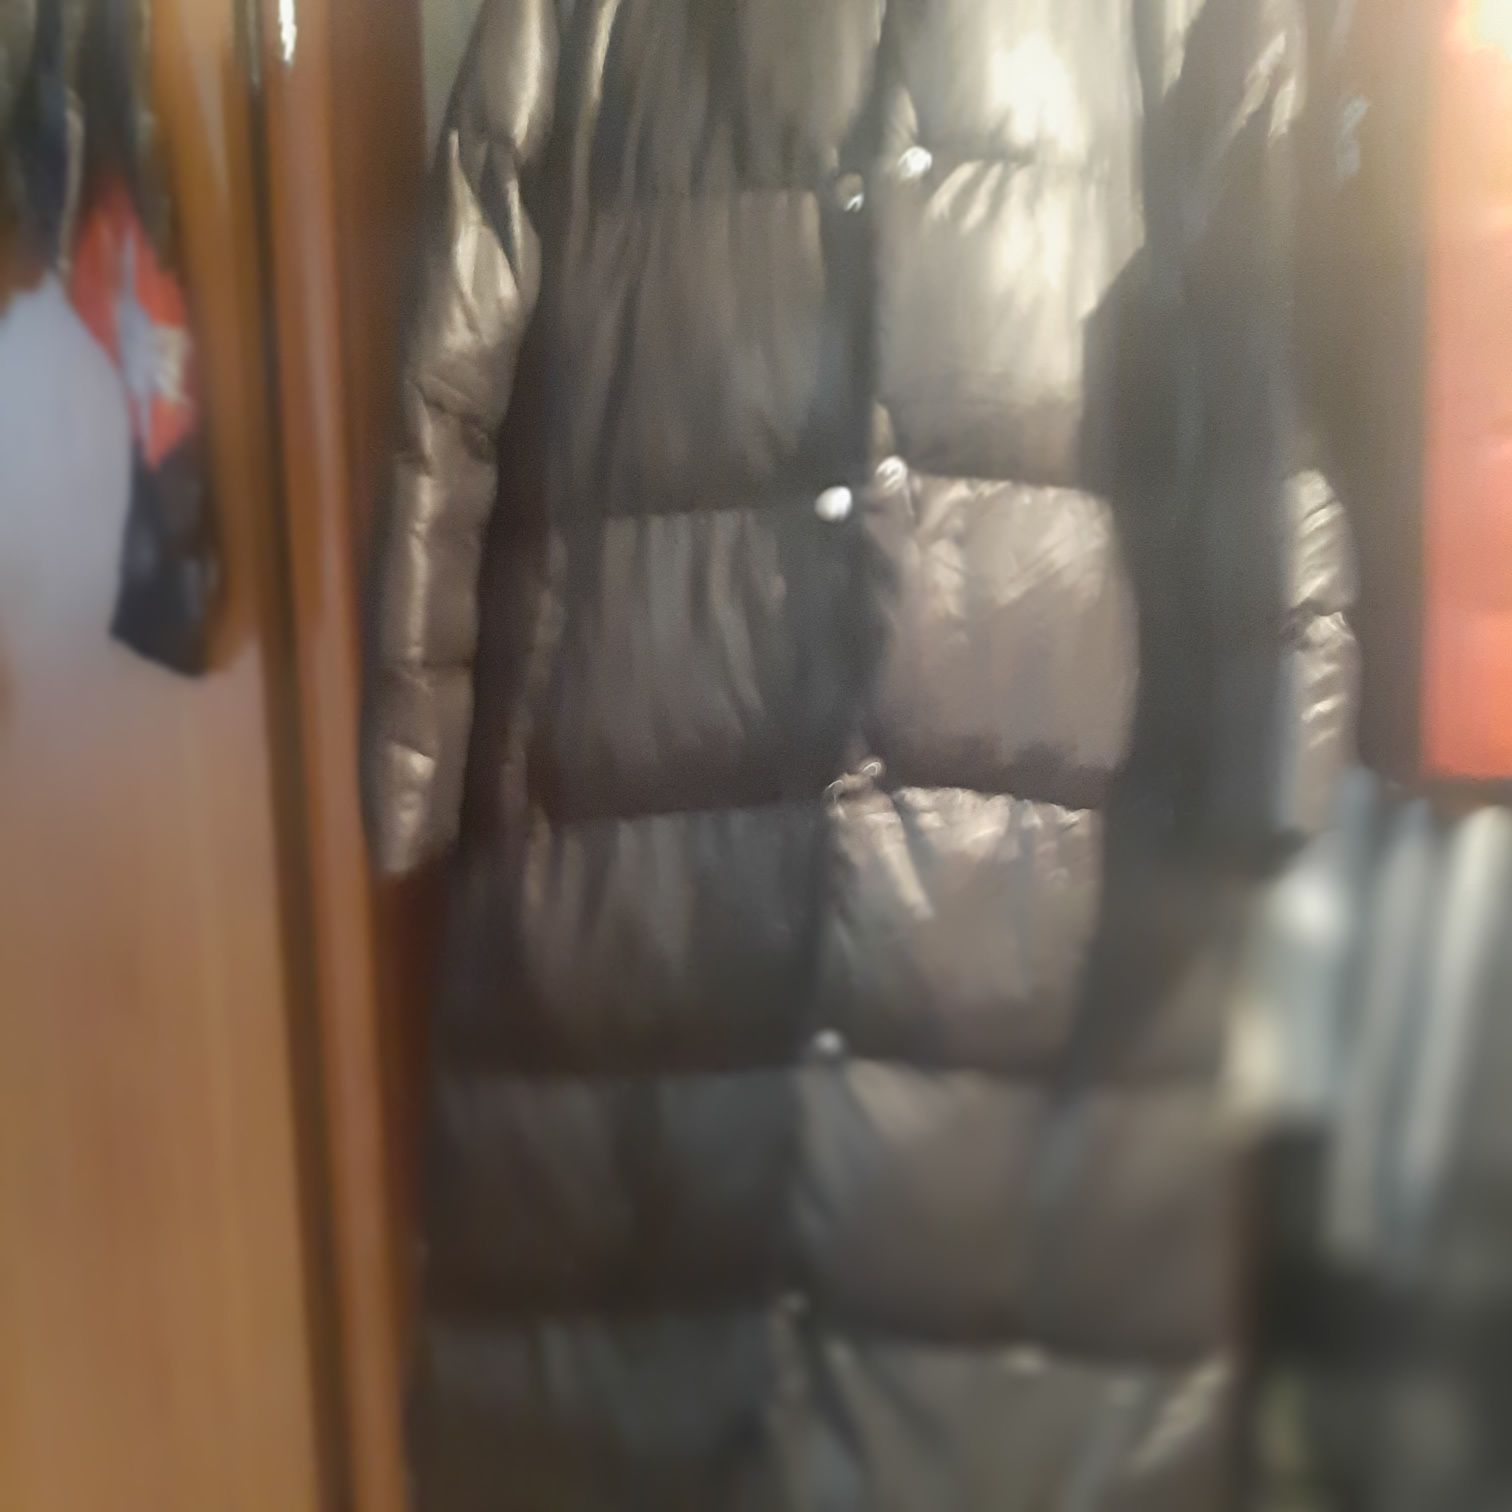 Куртка зимняя длиная 44